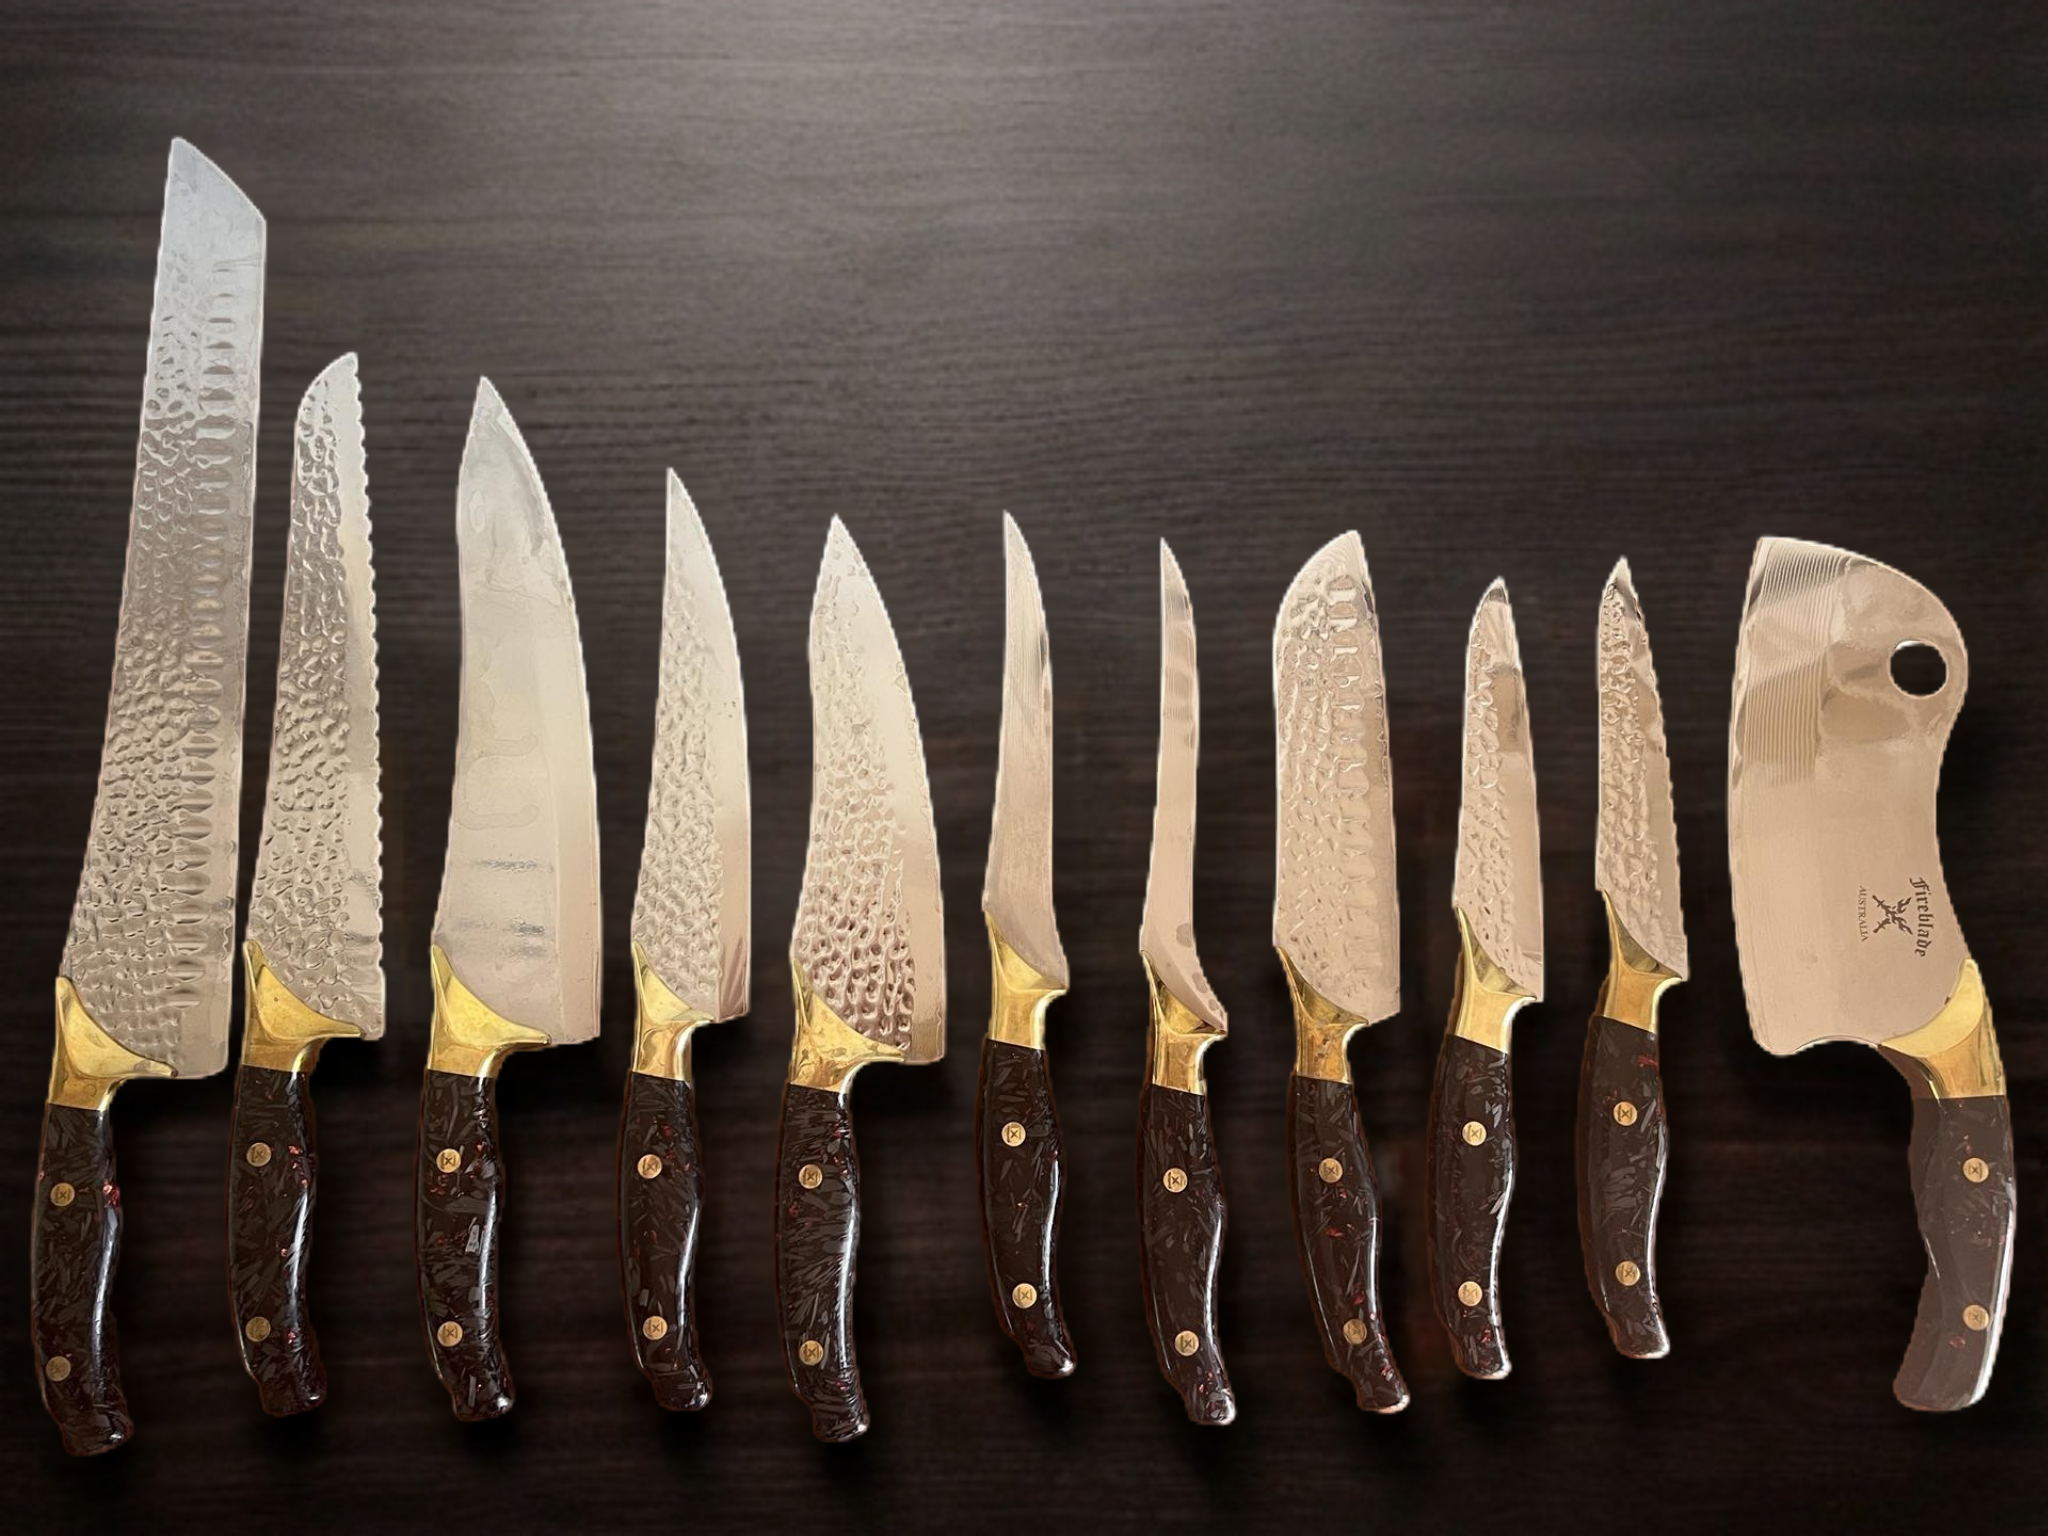 10 knife set complete